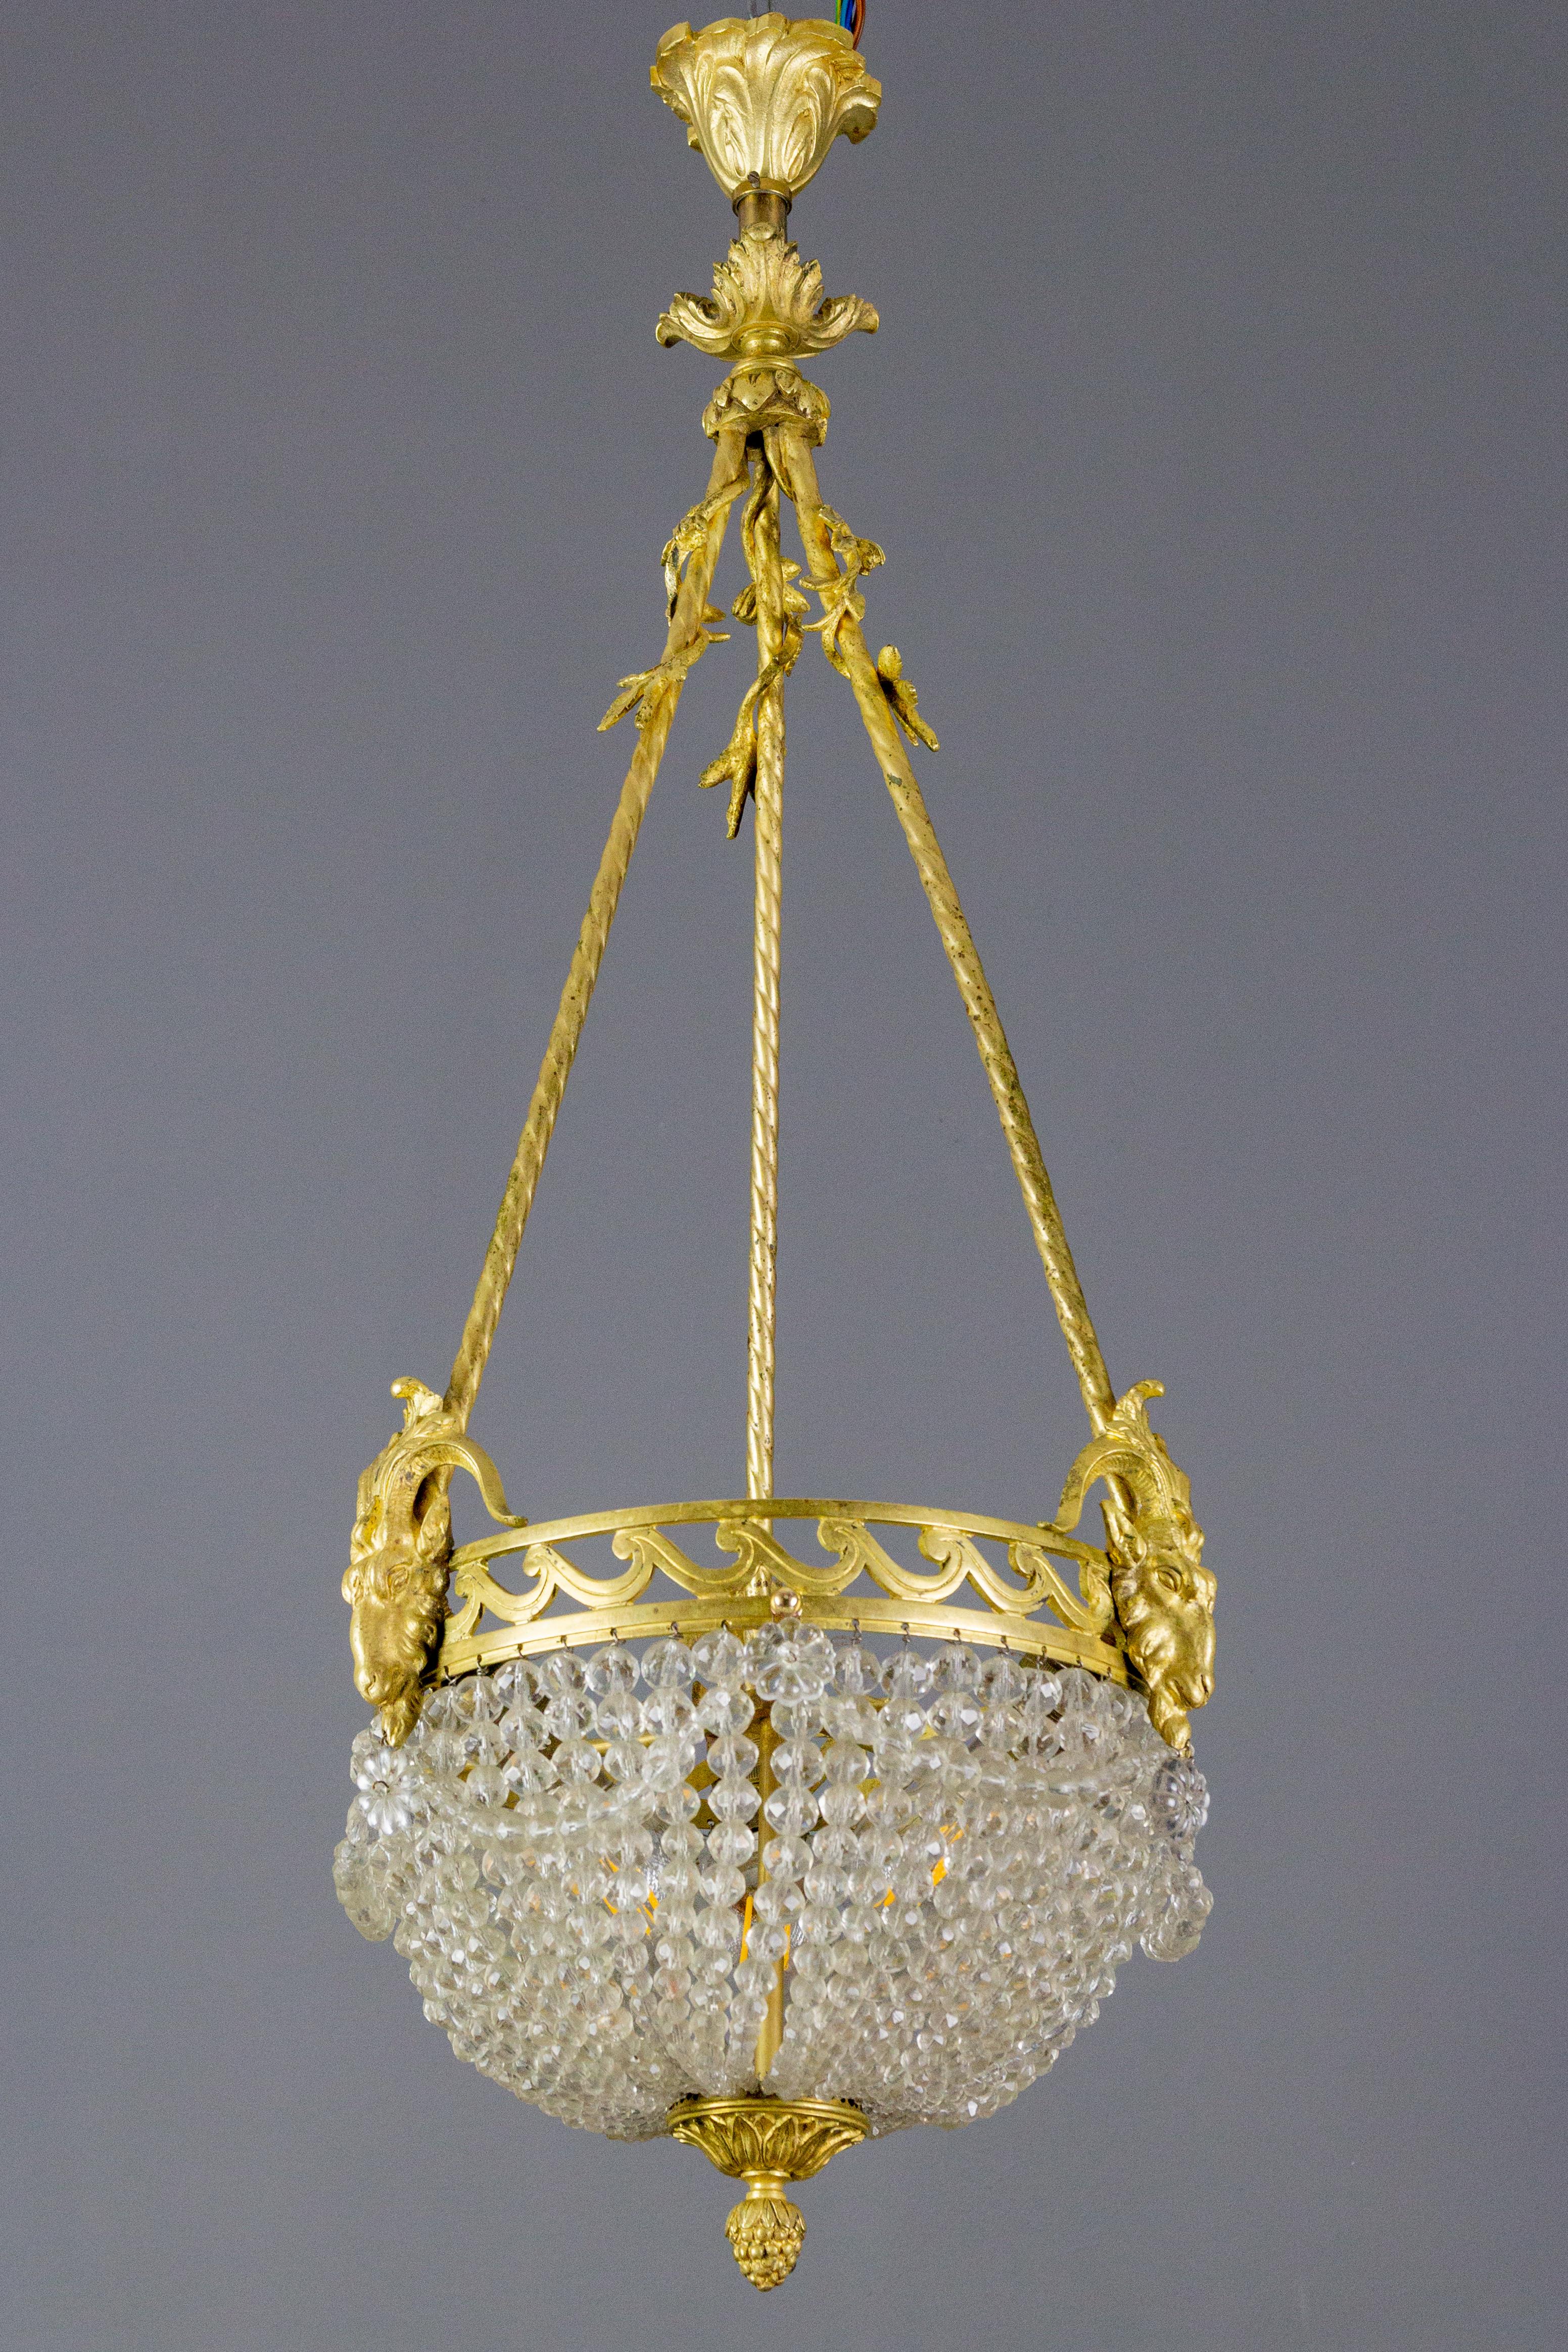 Ein bezaubernder französischer Kronleuchter im Louis-XVI-Stil aus den 1920er Jahren. Das zentrale Lichtbündel ist von wunderschönen Kristallgirlanden und einem eleganten Rand mit drei Widderköpfen umgeben, die an drei Bronzeseilen aufgehängt sind,